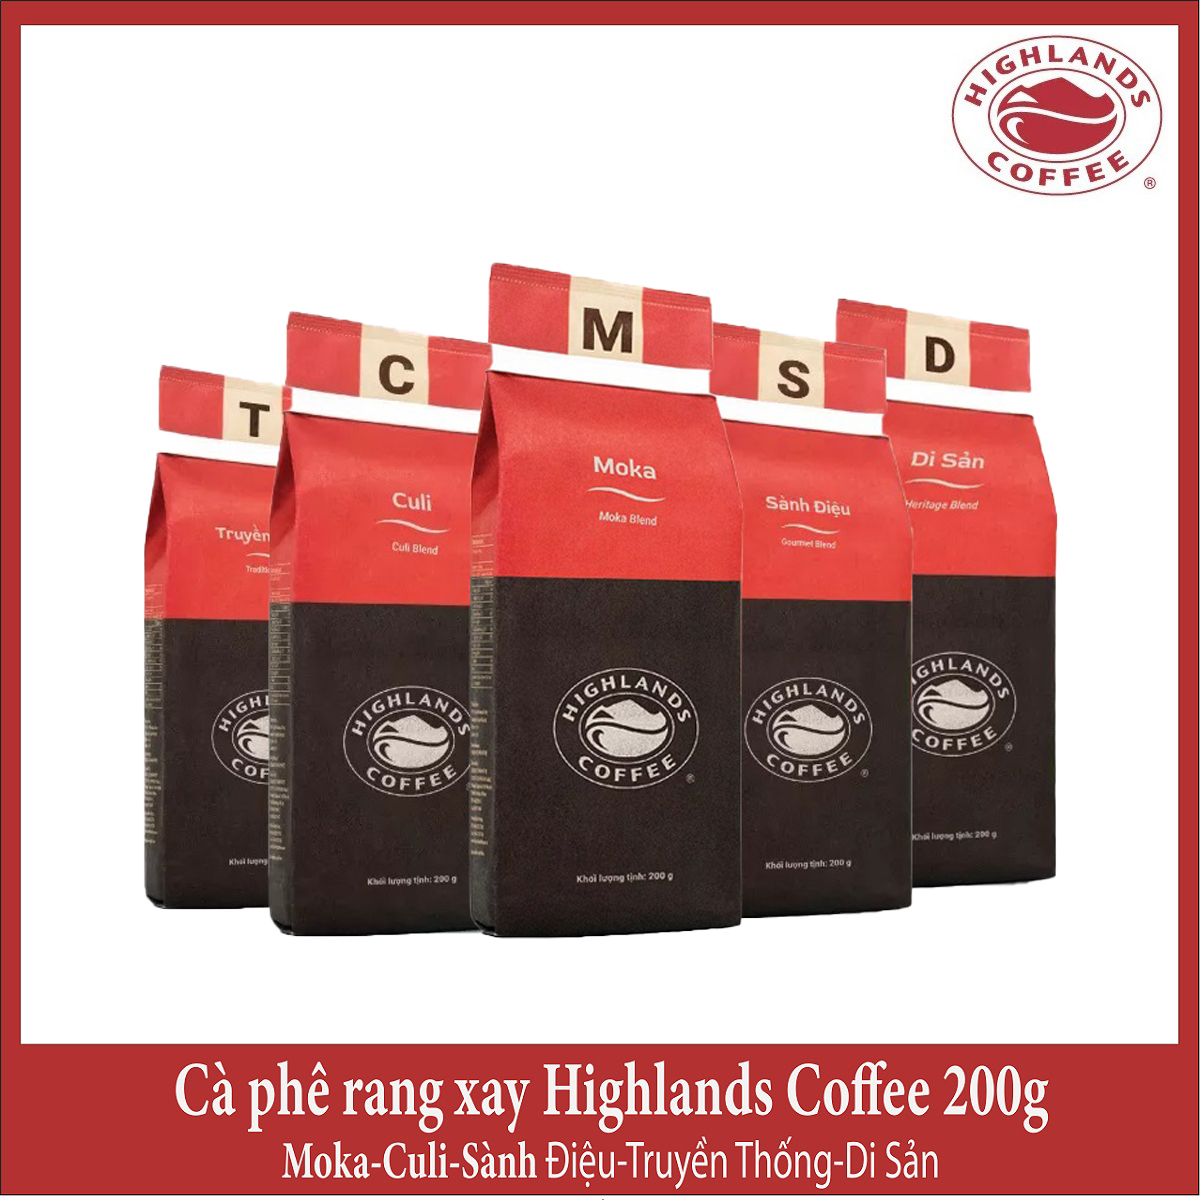 Vietnamese Coffee - Cà phê Rang xay Highlands Coffee 200g - Moka/culi/truyền thống